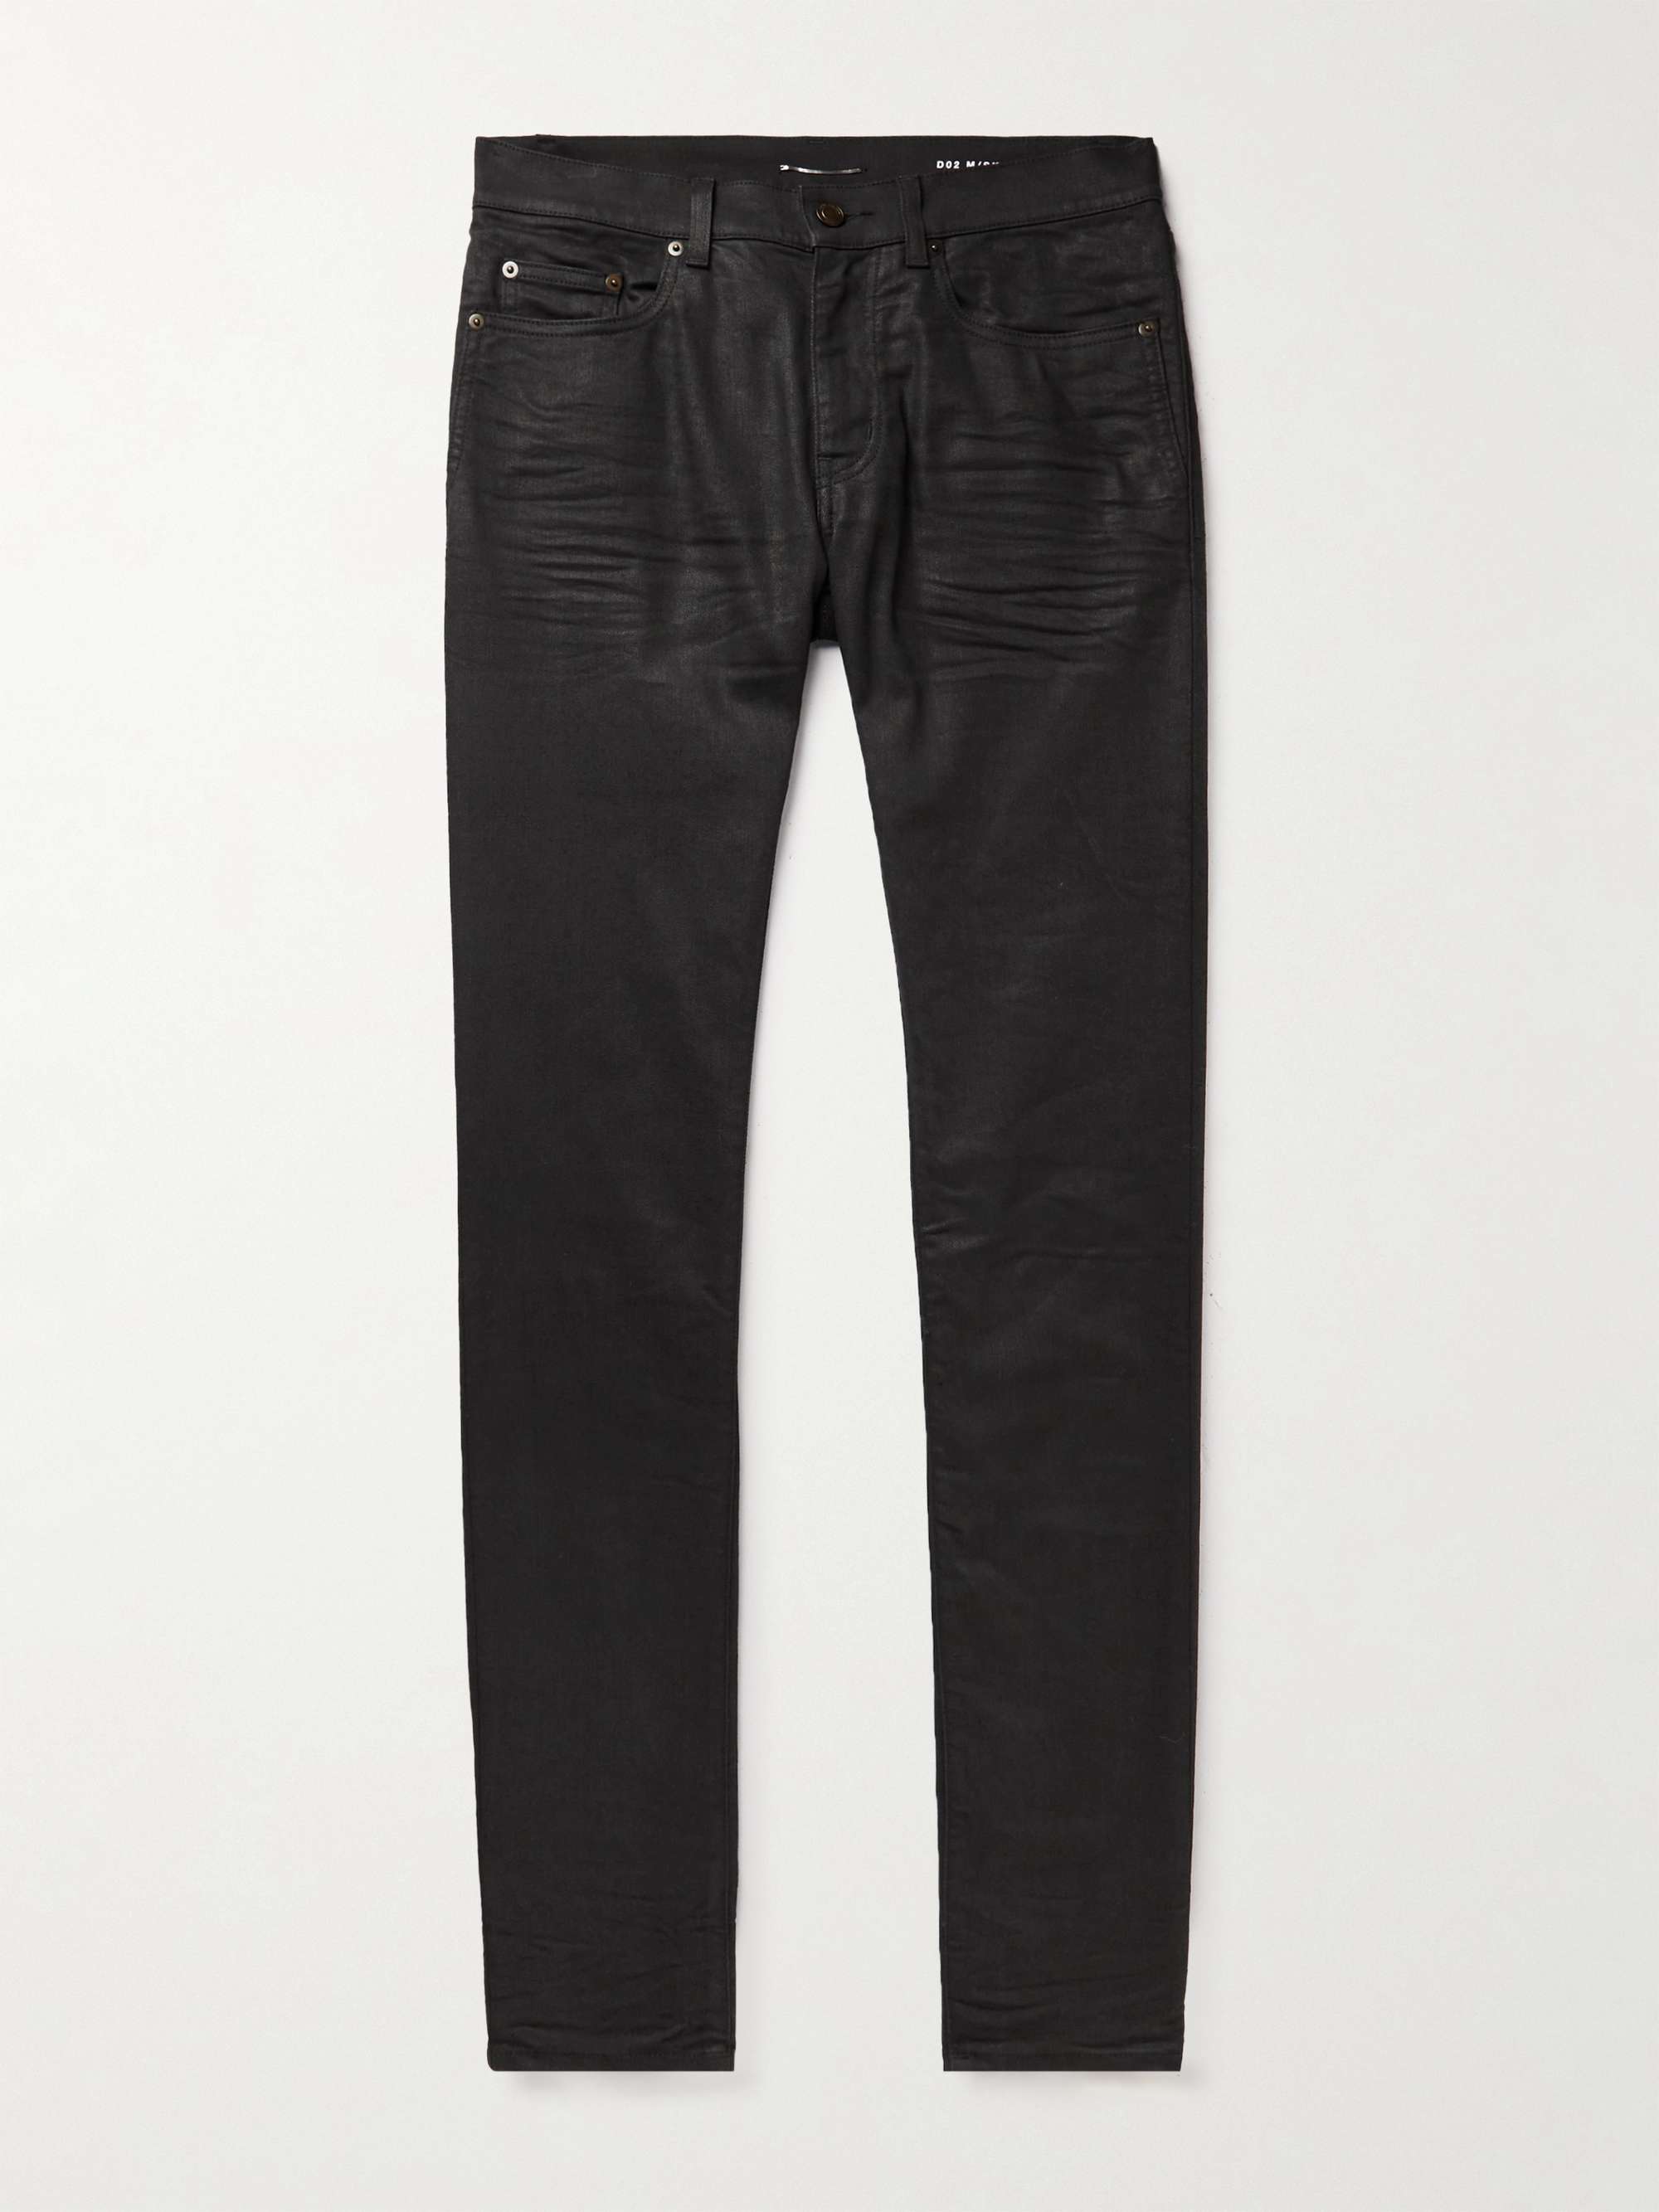 SAINT LAURENT Slim-Fit Jeans | MR PORTER